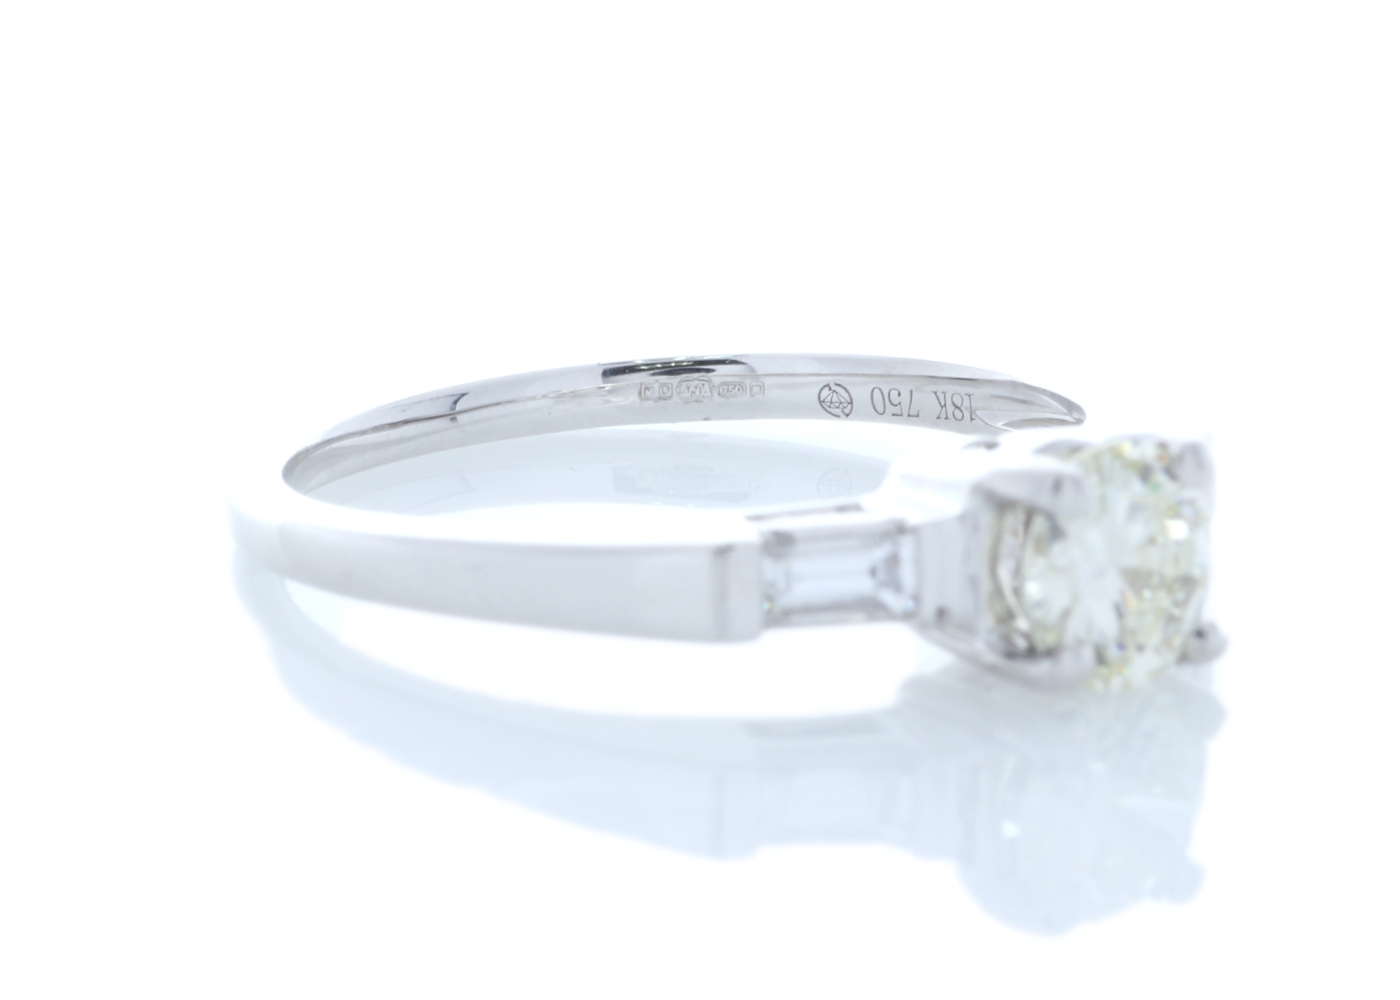 18k White Gold Baguette Shoulder Set Diamond Ring 0.67 Carats - Image 4 of 5